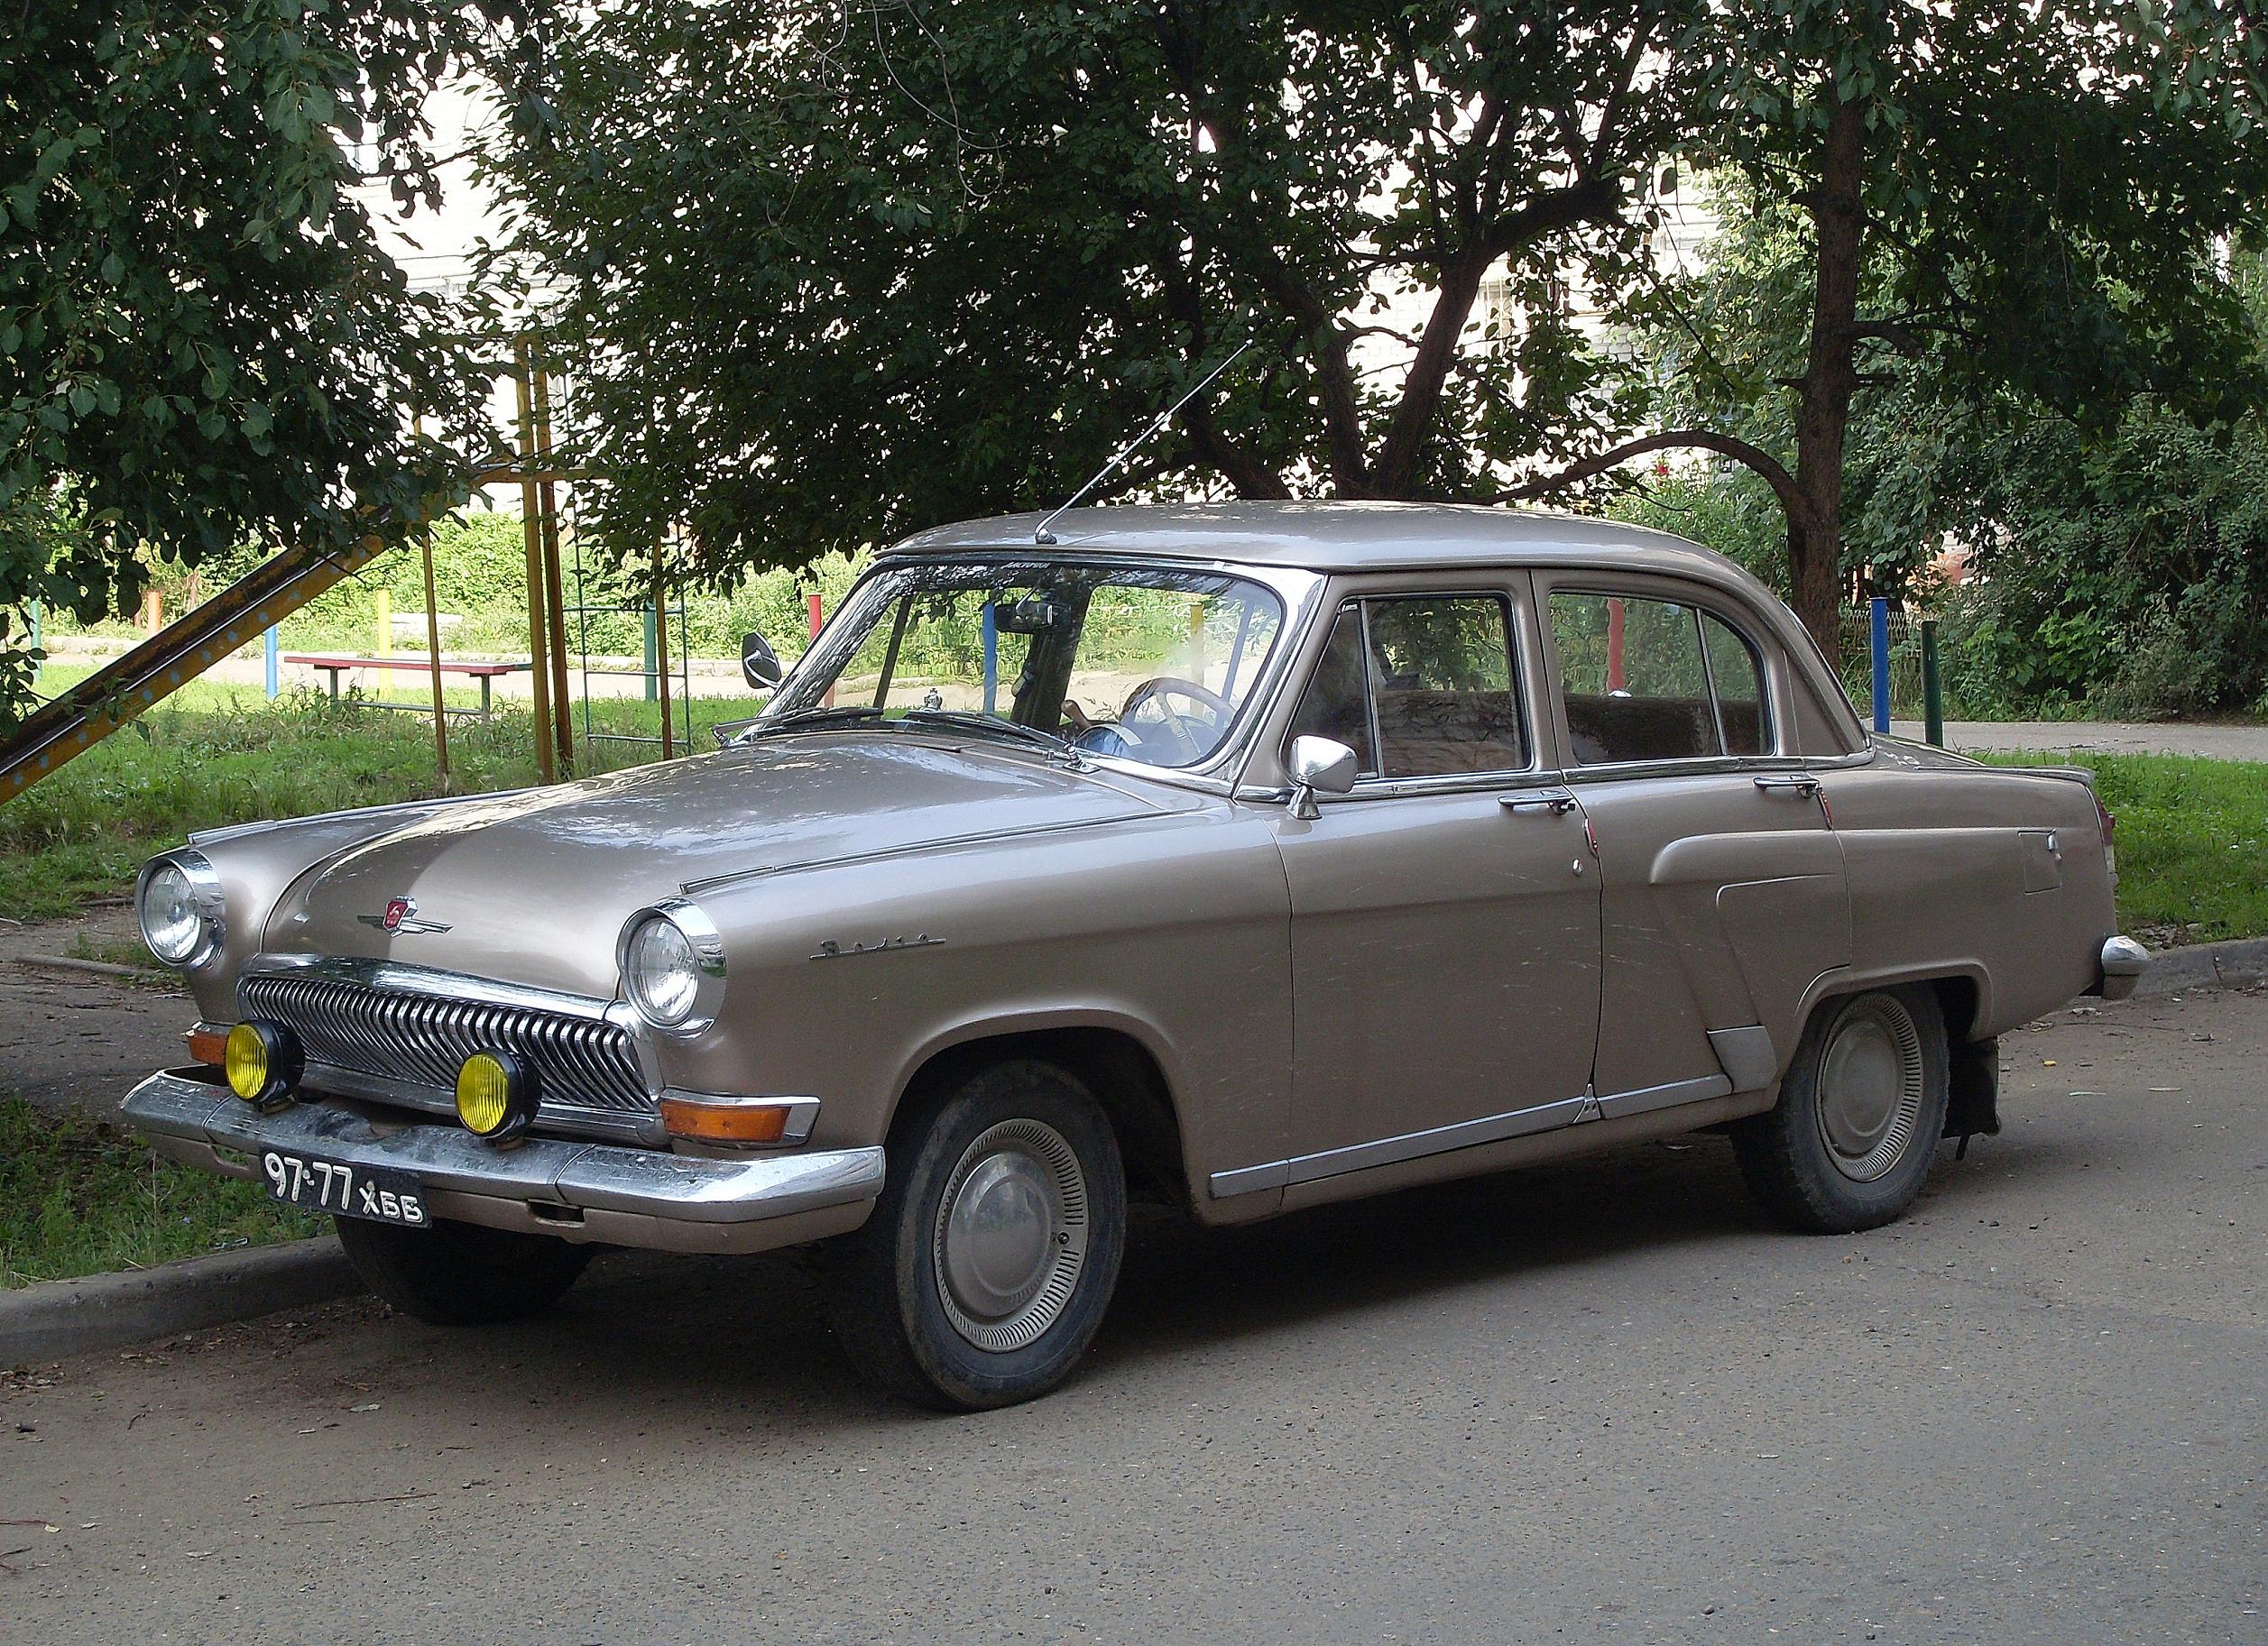 ГАЗ-21 ''Волга'' 1963 г.в. (''М-21-У'') во дворе дома по ул.Пионерской,59 (1). 18 августа 2011